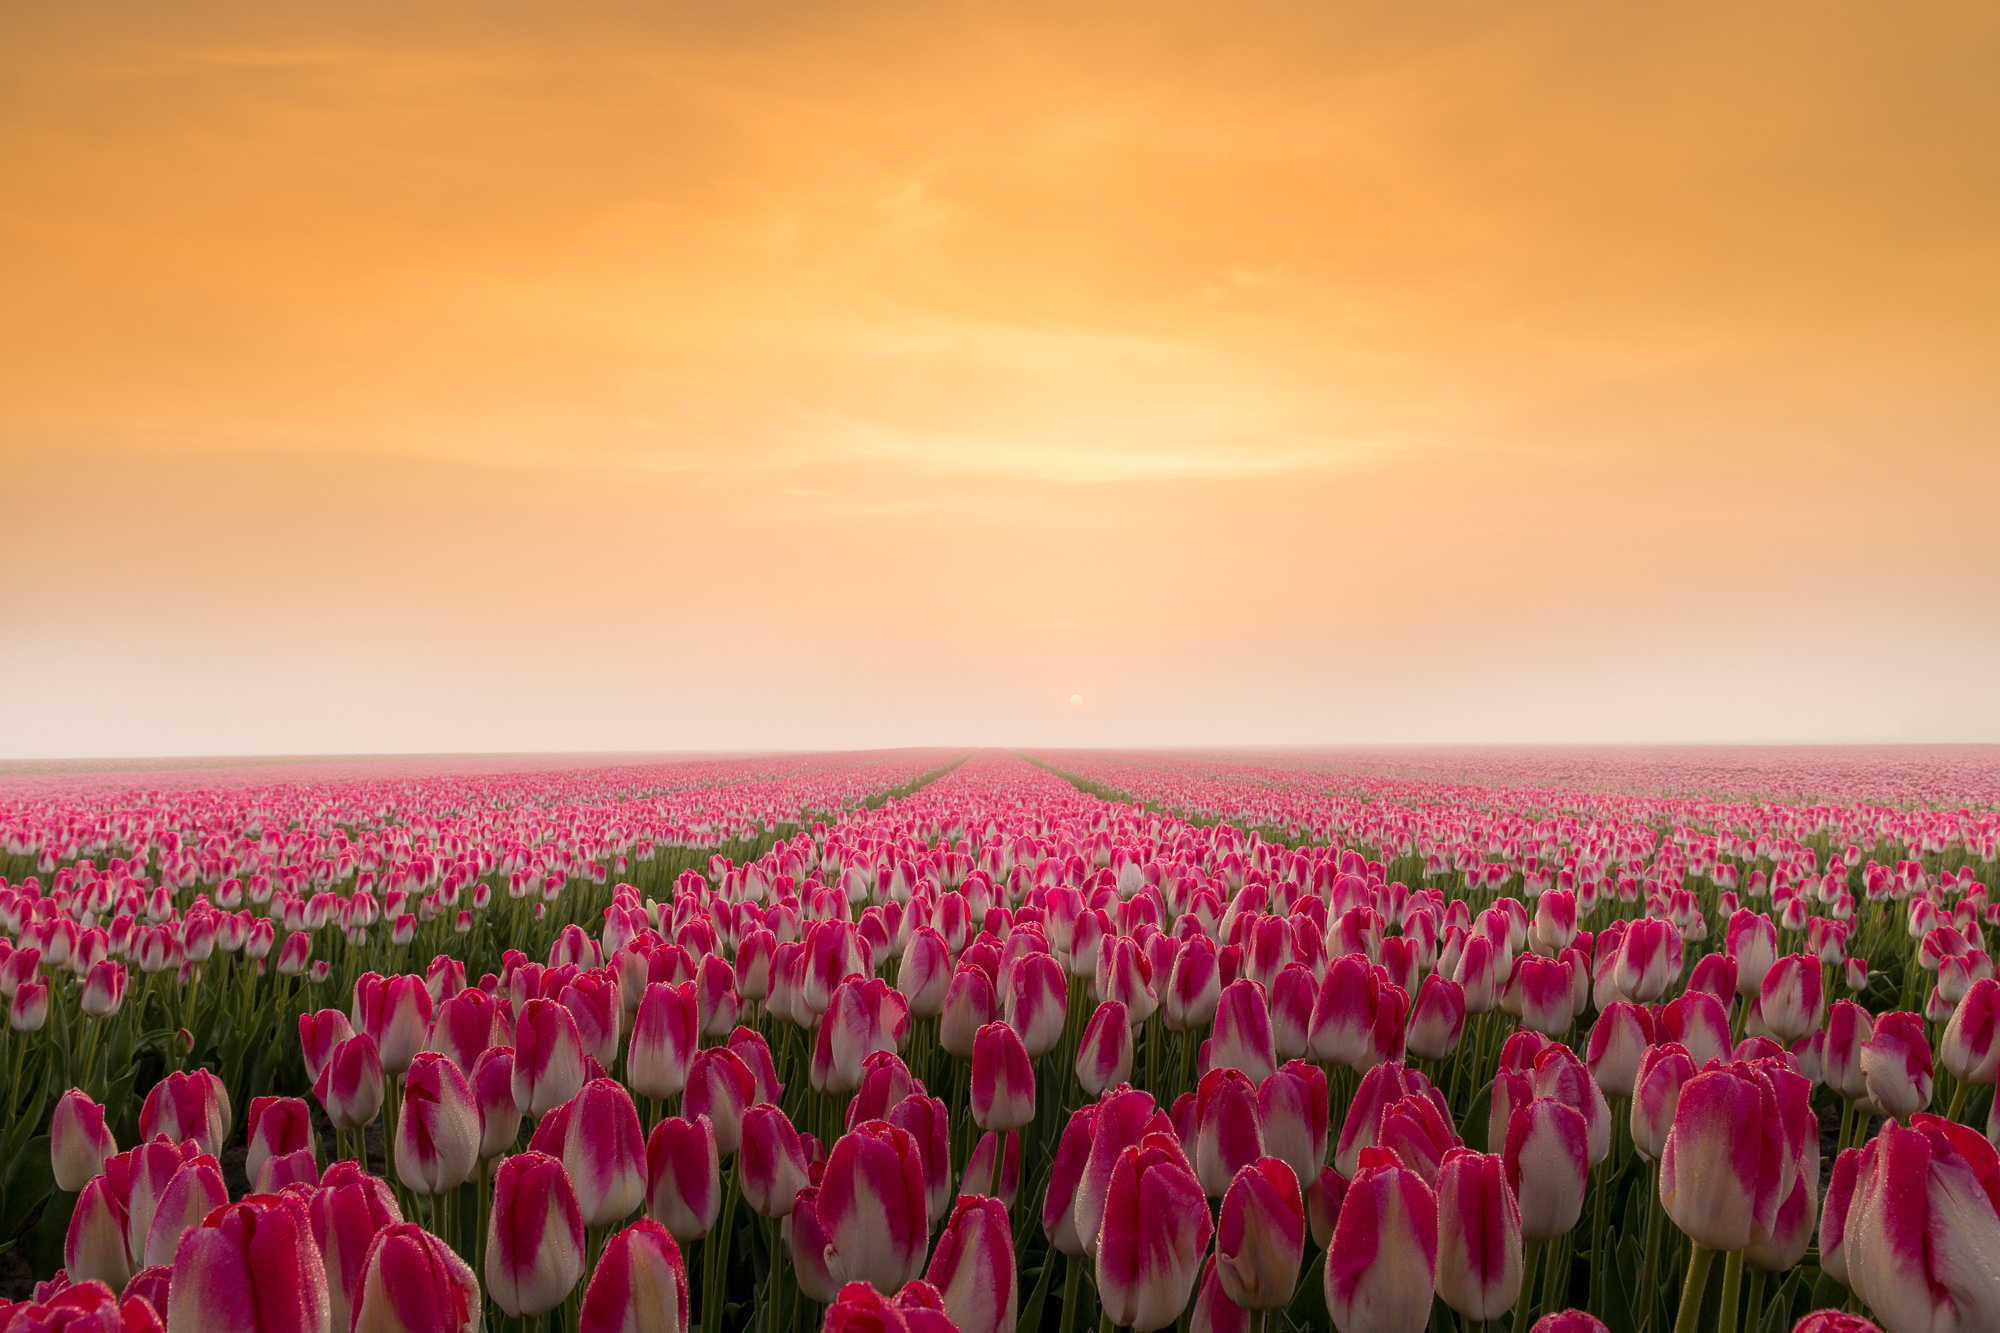 sunrise-in-a-tulip-field.jpg